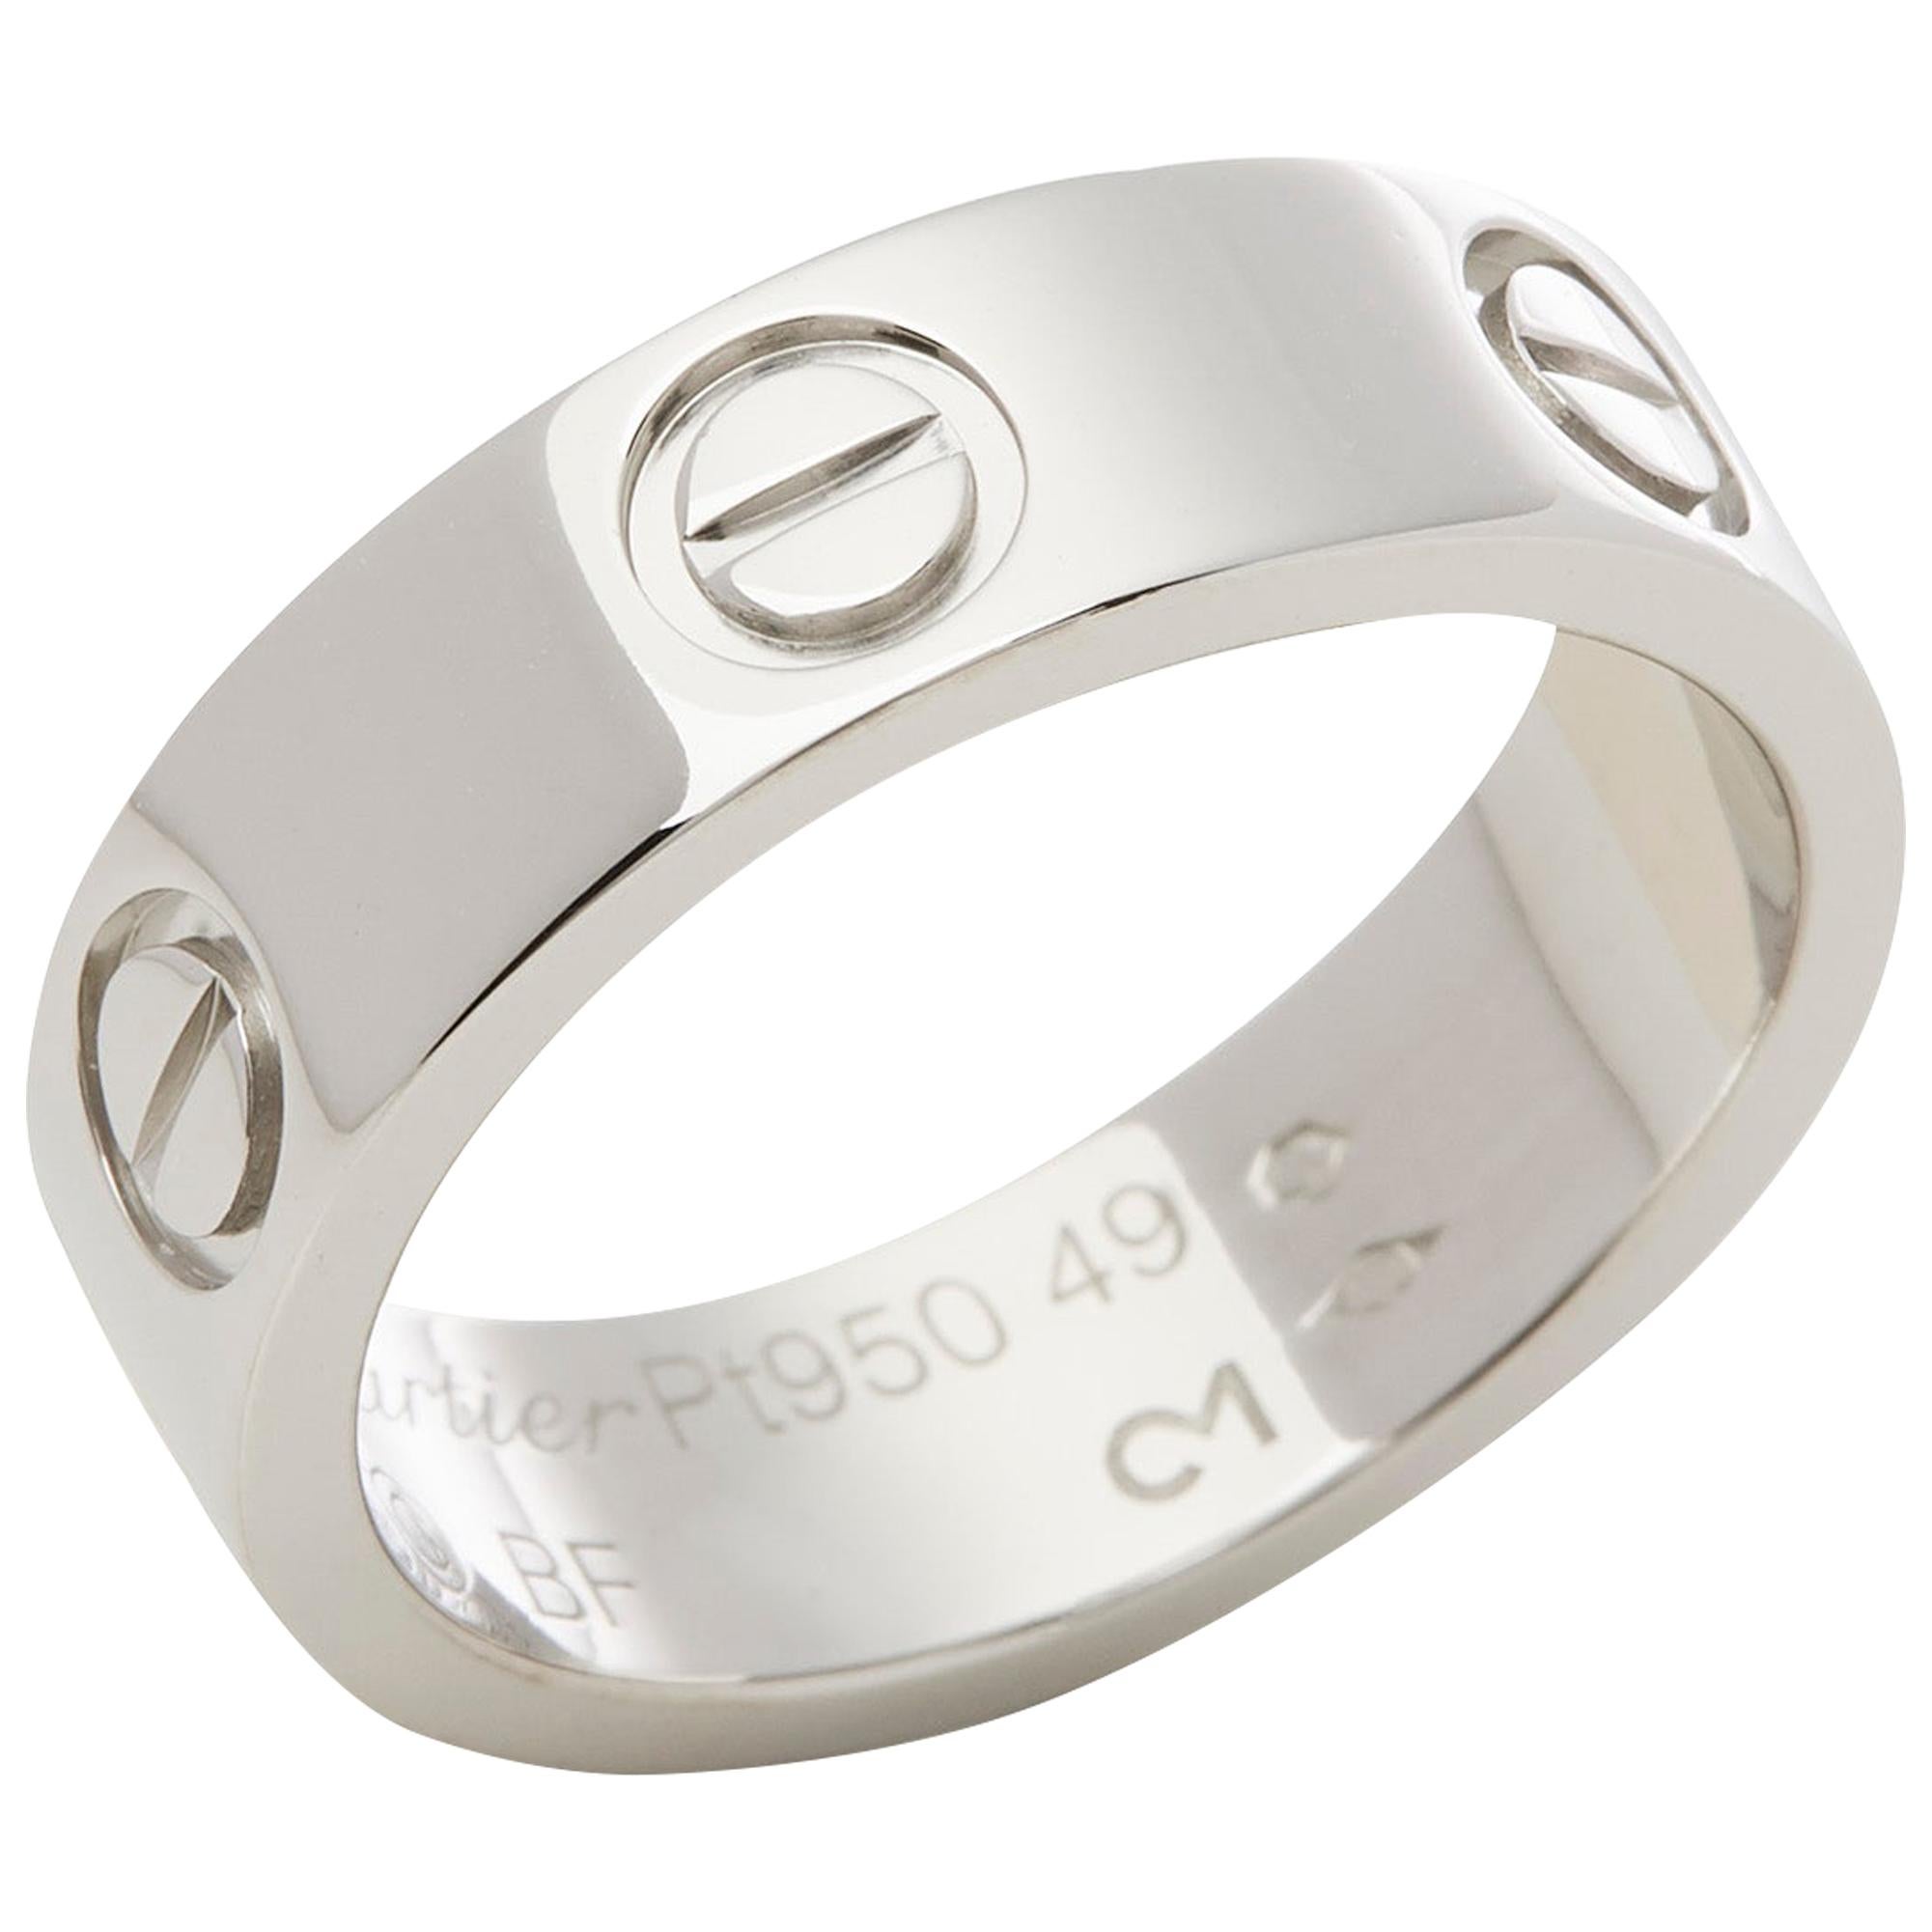 Cartier Platinum Love Ring